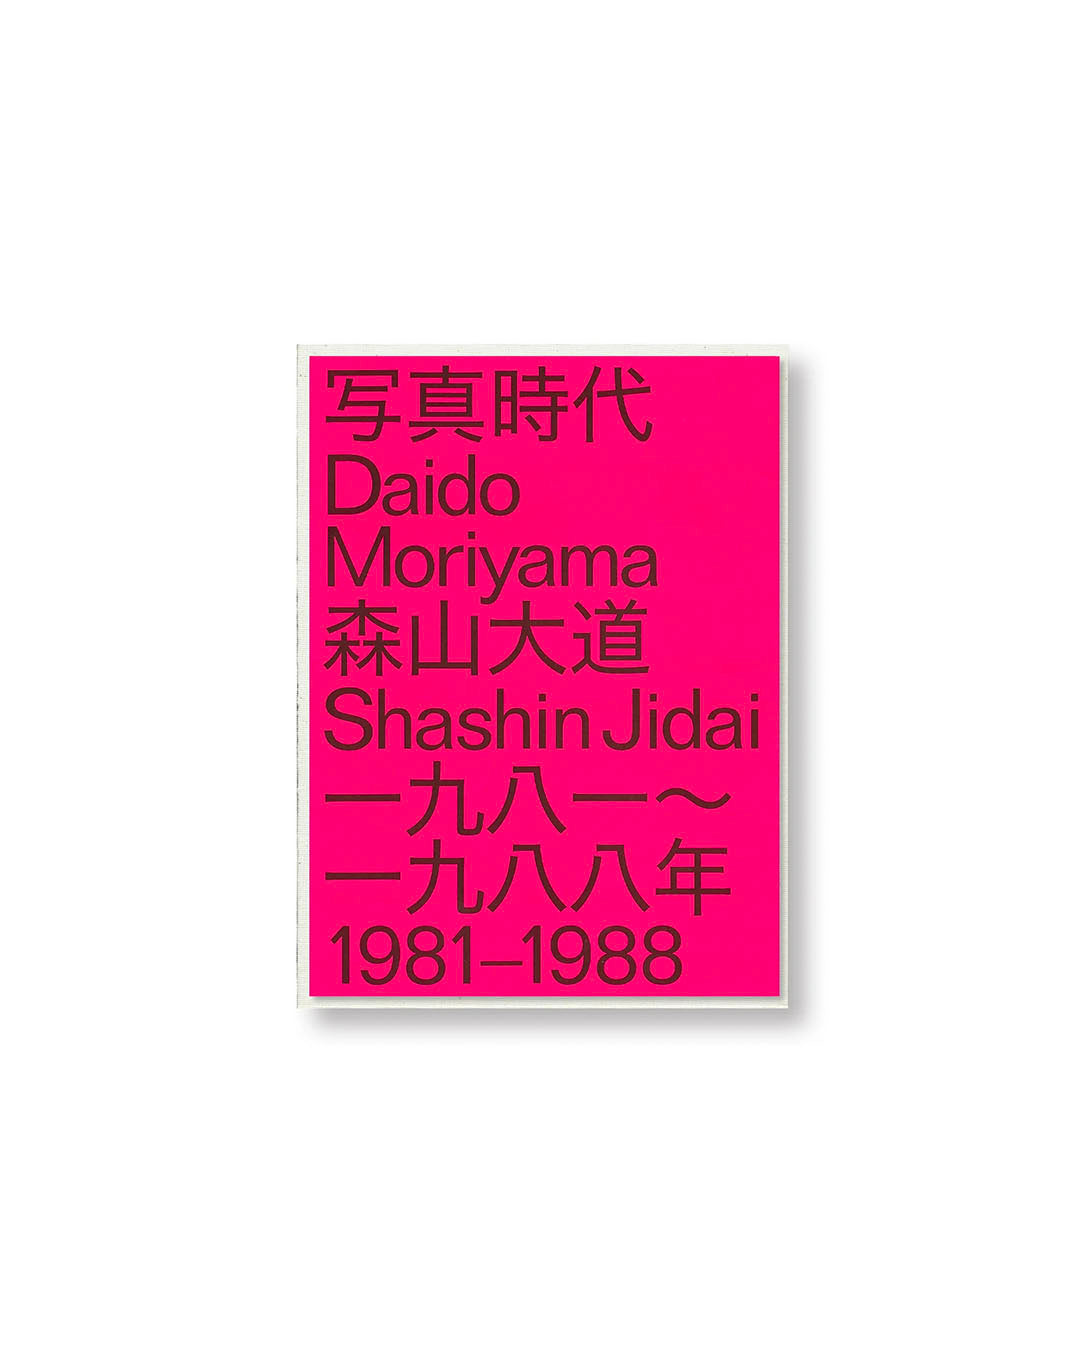 【DAIDO MORIYAMA】DAIDO MORIYAMA SHASIN JIDAI 1981 - 1988 by Daido Moriyama